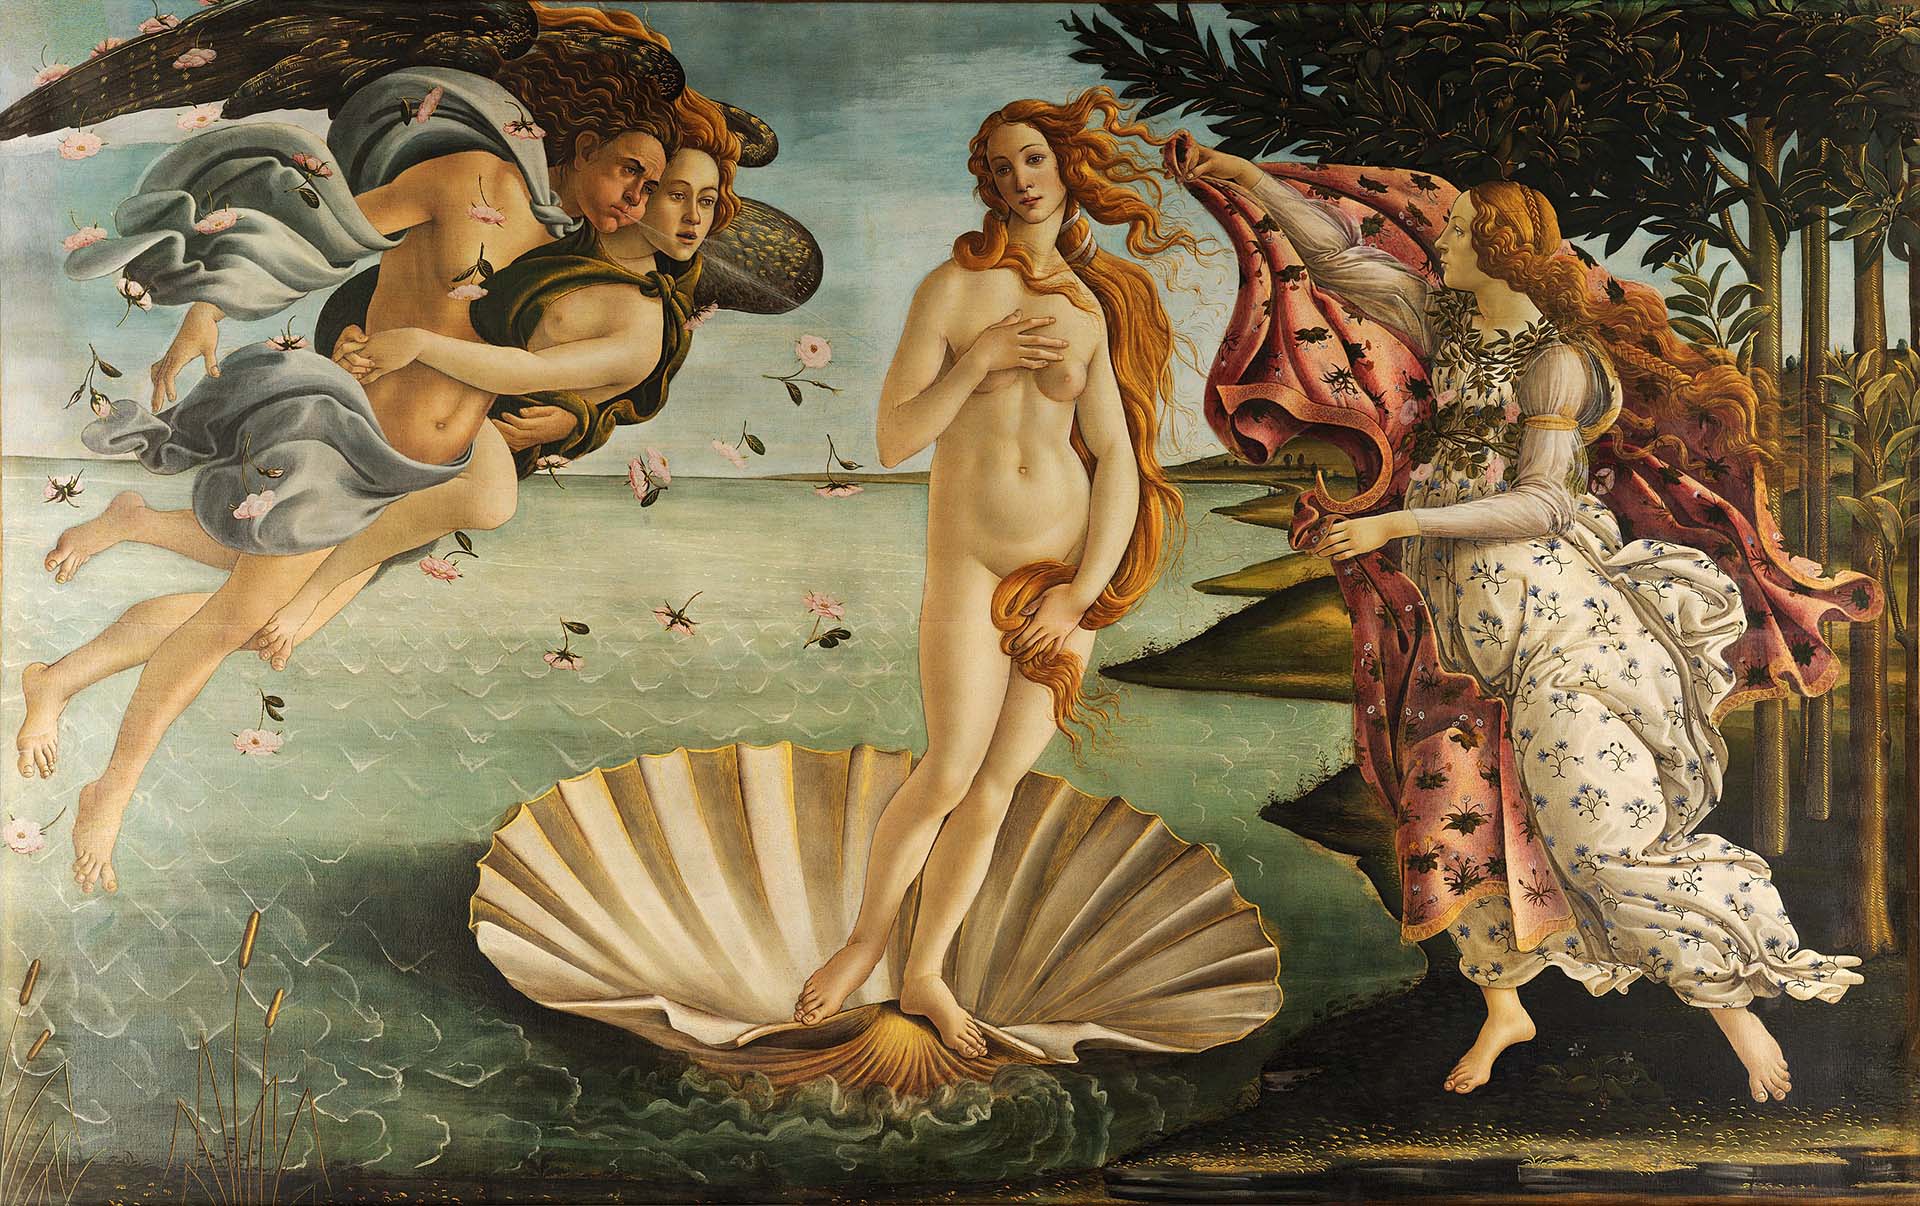 The original The Birth of Venus by Sandro Botticelli